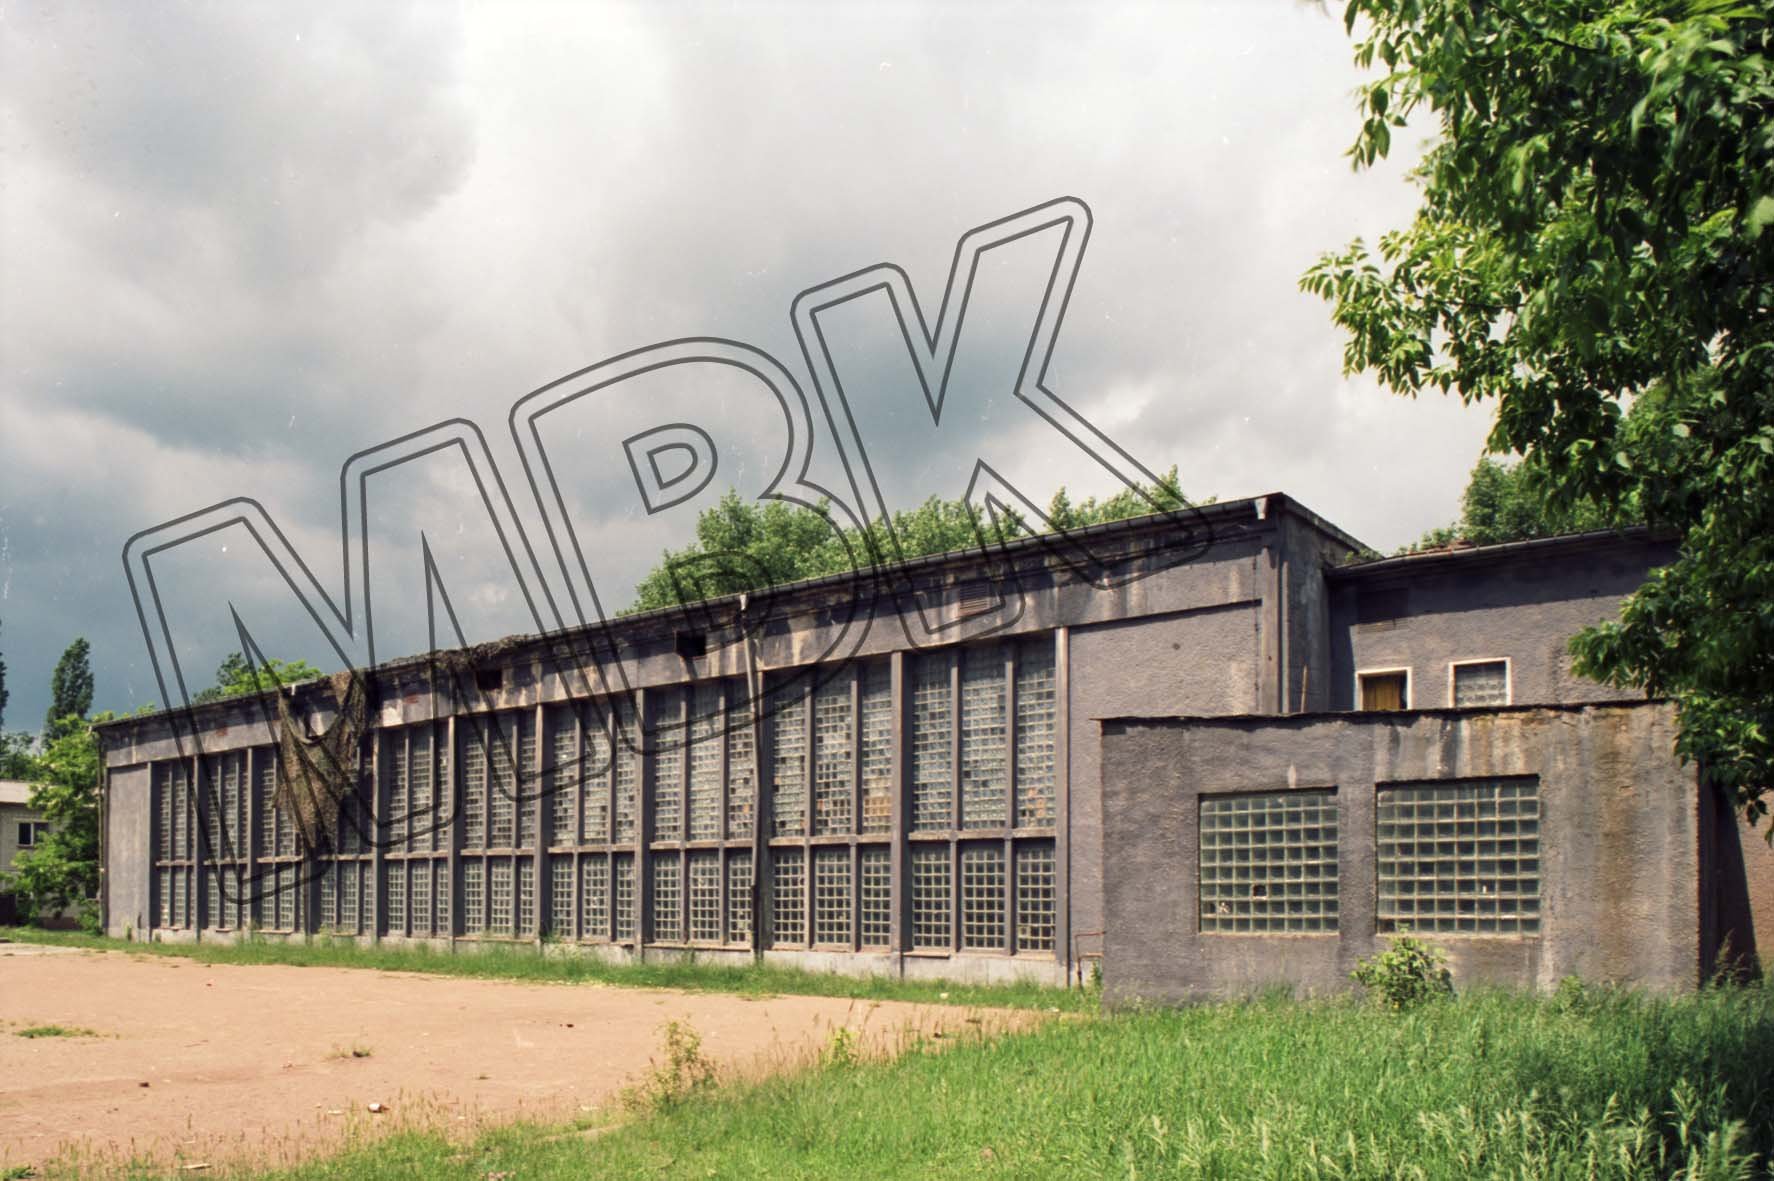 Fotografie: Sporthalle der WGT, Wünsdorf, vermutlich 1994 (Museum Berlin-Karlshorst RR-P)